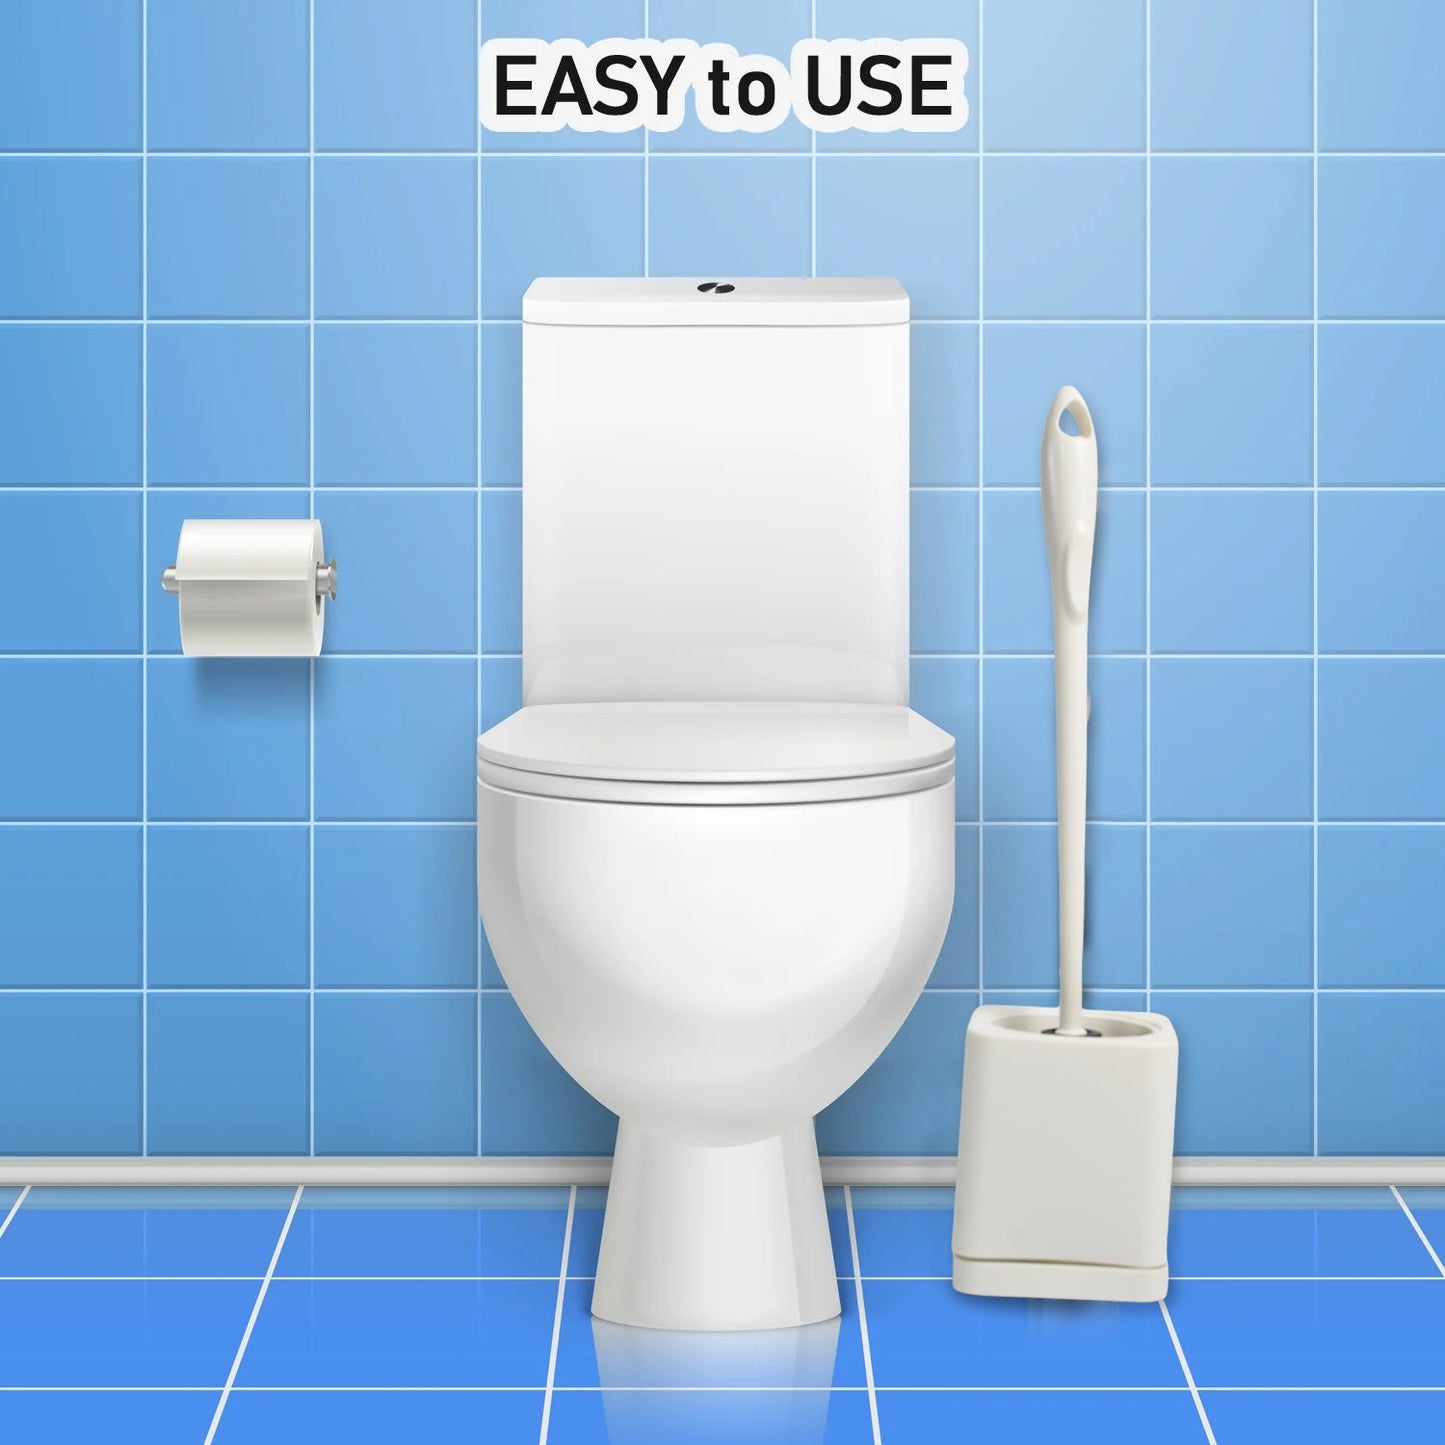 7624 Toilet Brush Set Household Cleaning Toilet Brushes Holder Sets Home Bathroom 